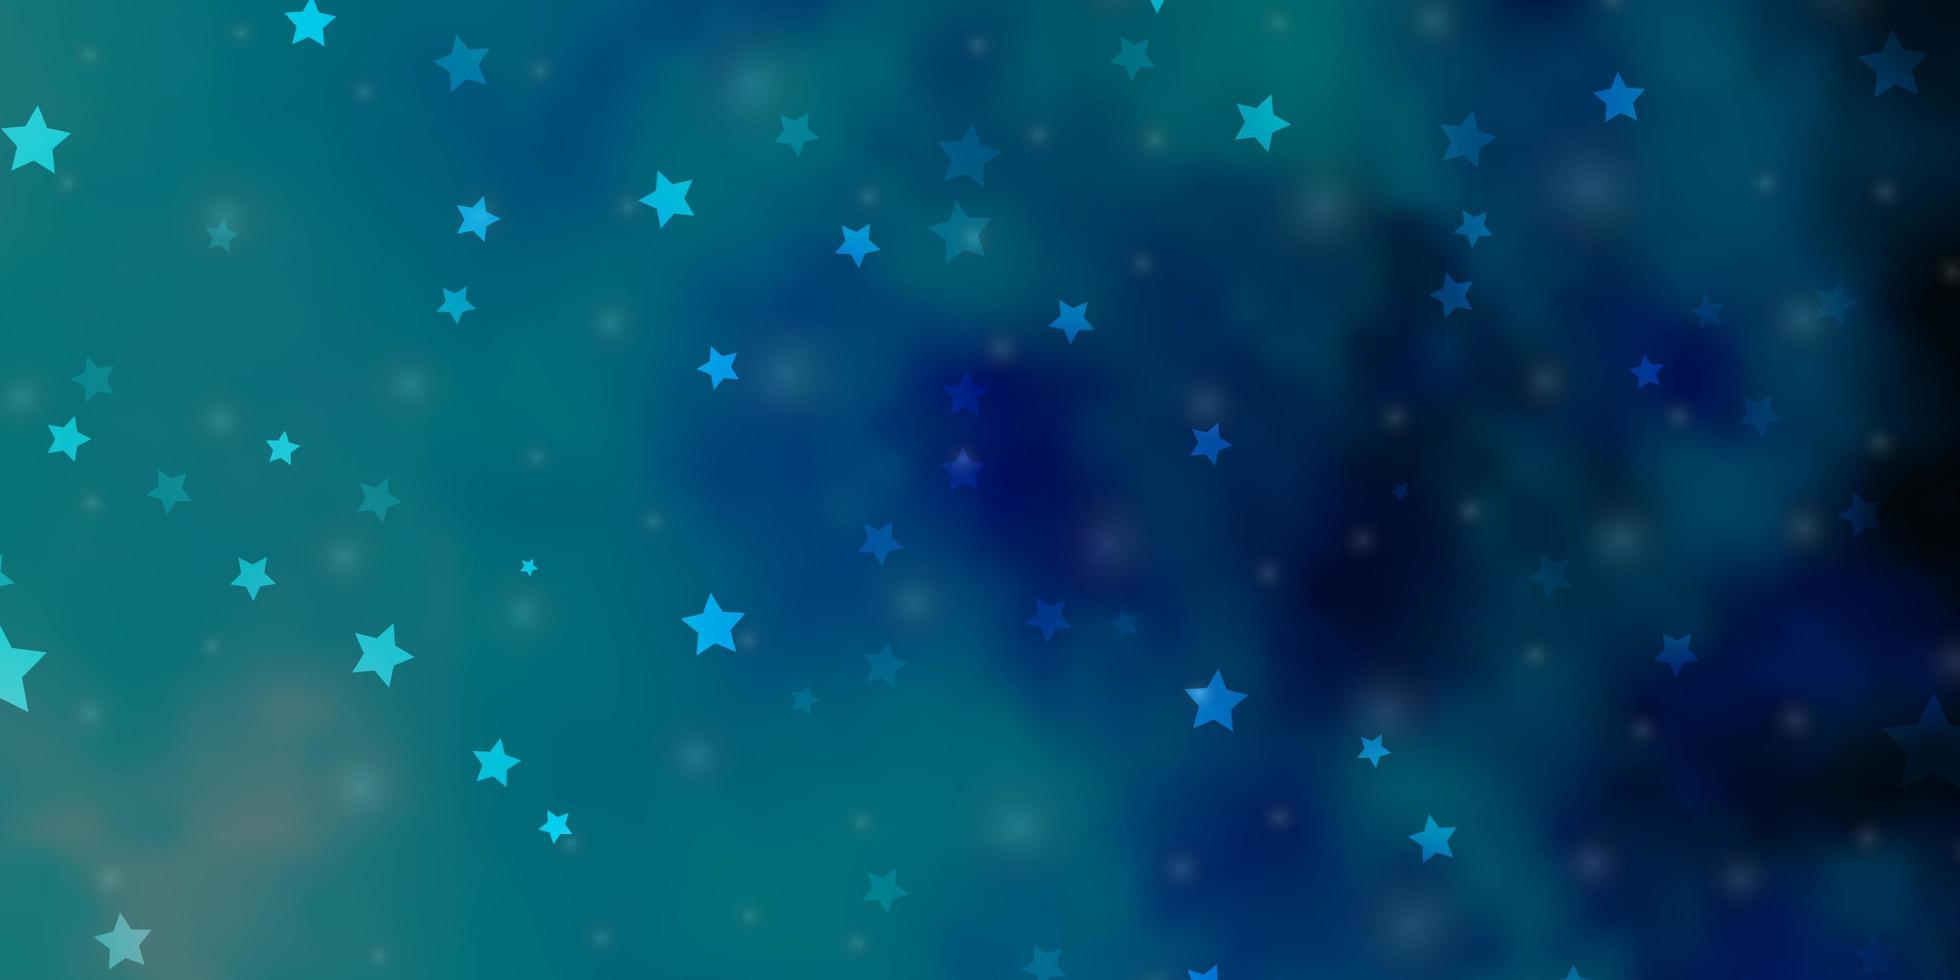 fundo azul claro do vetor com estrelas pequenas e grandes brilhando ilustração colorida com estrelas pequenas e grandes design para a promoção de sua empresa